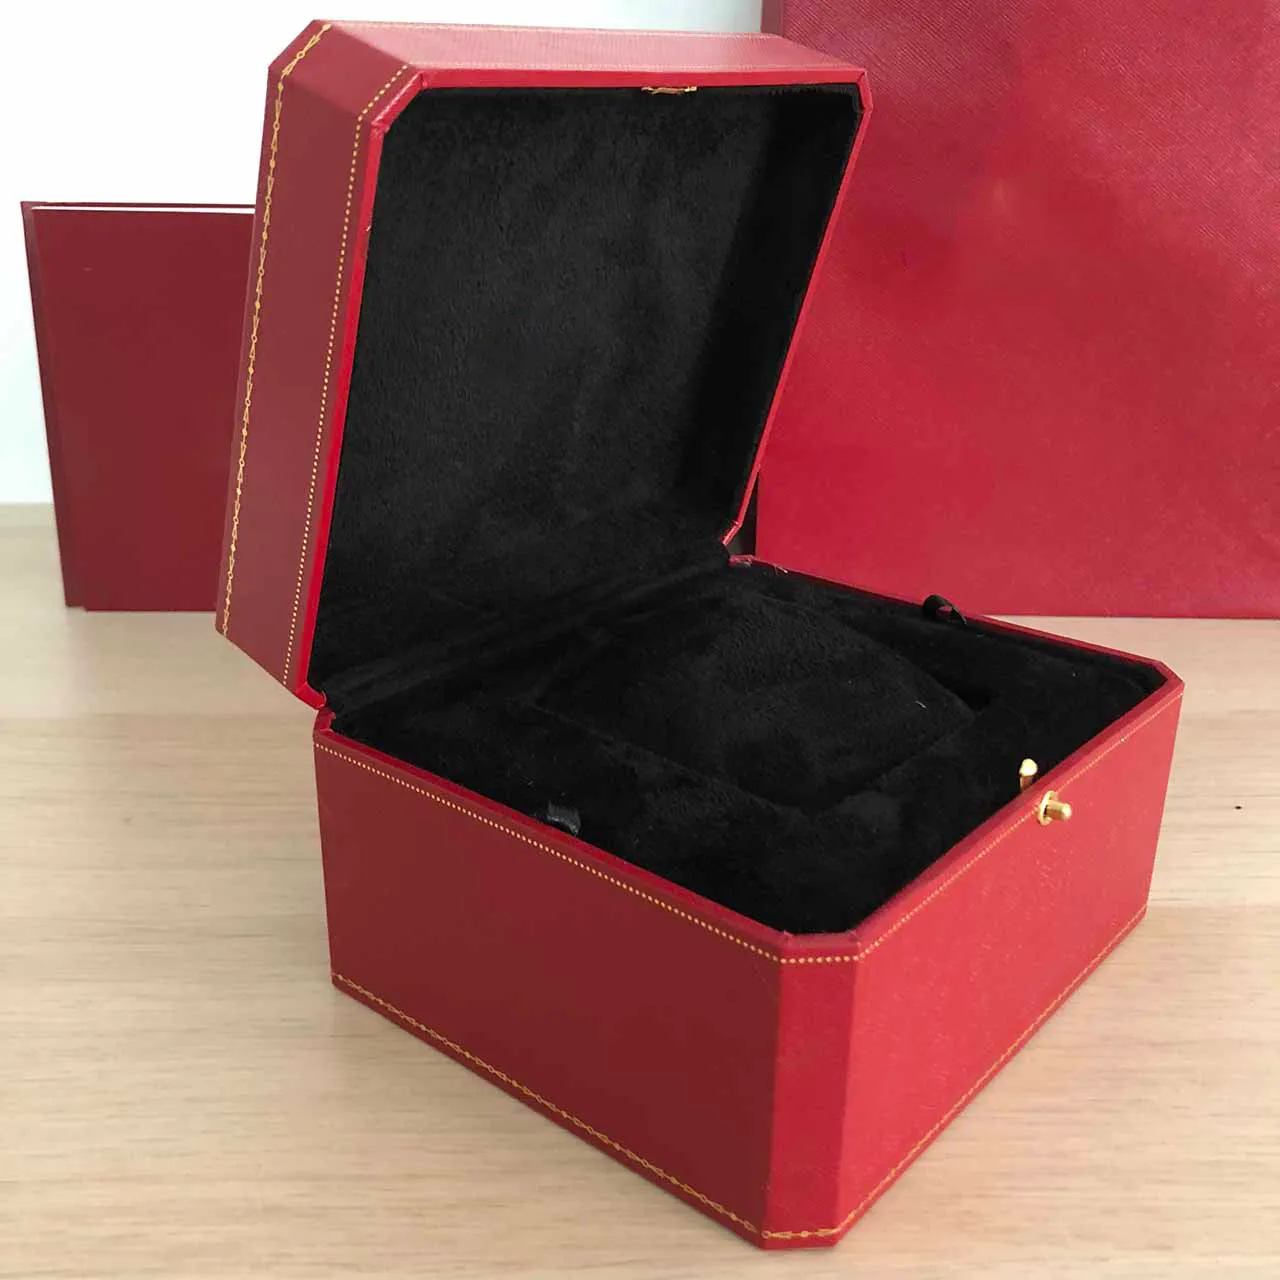 Vários relógios caixa coletor de luxo qualidade high end madeira para brochura cartão tag arquivo saco masculino assistir caixas vermelhas gift278i